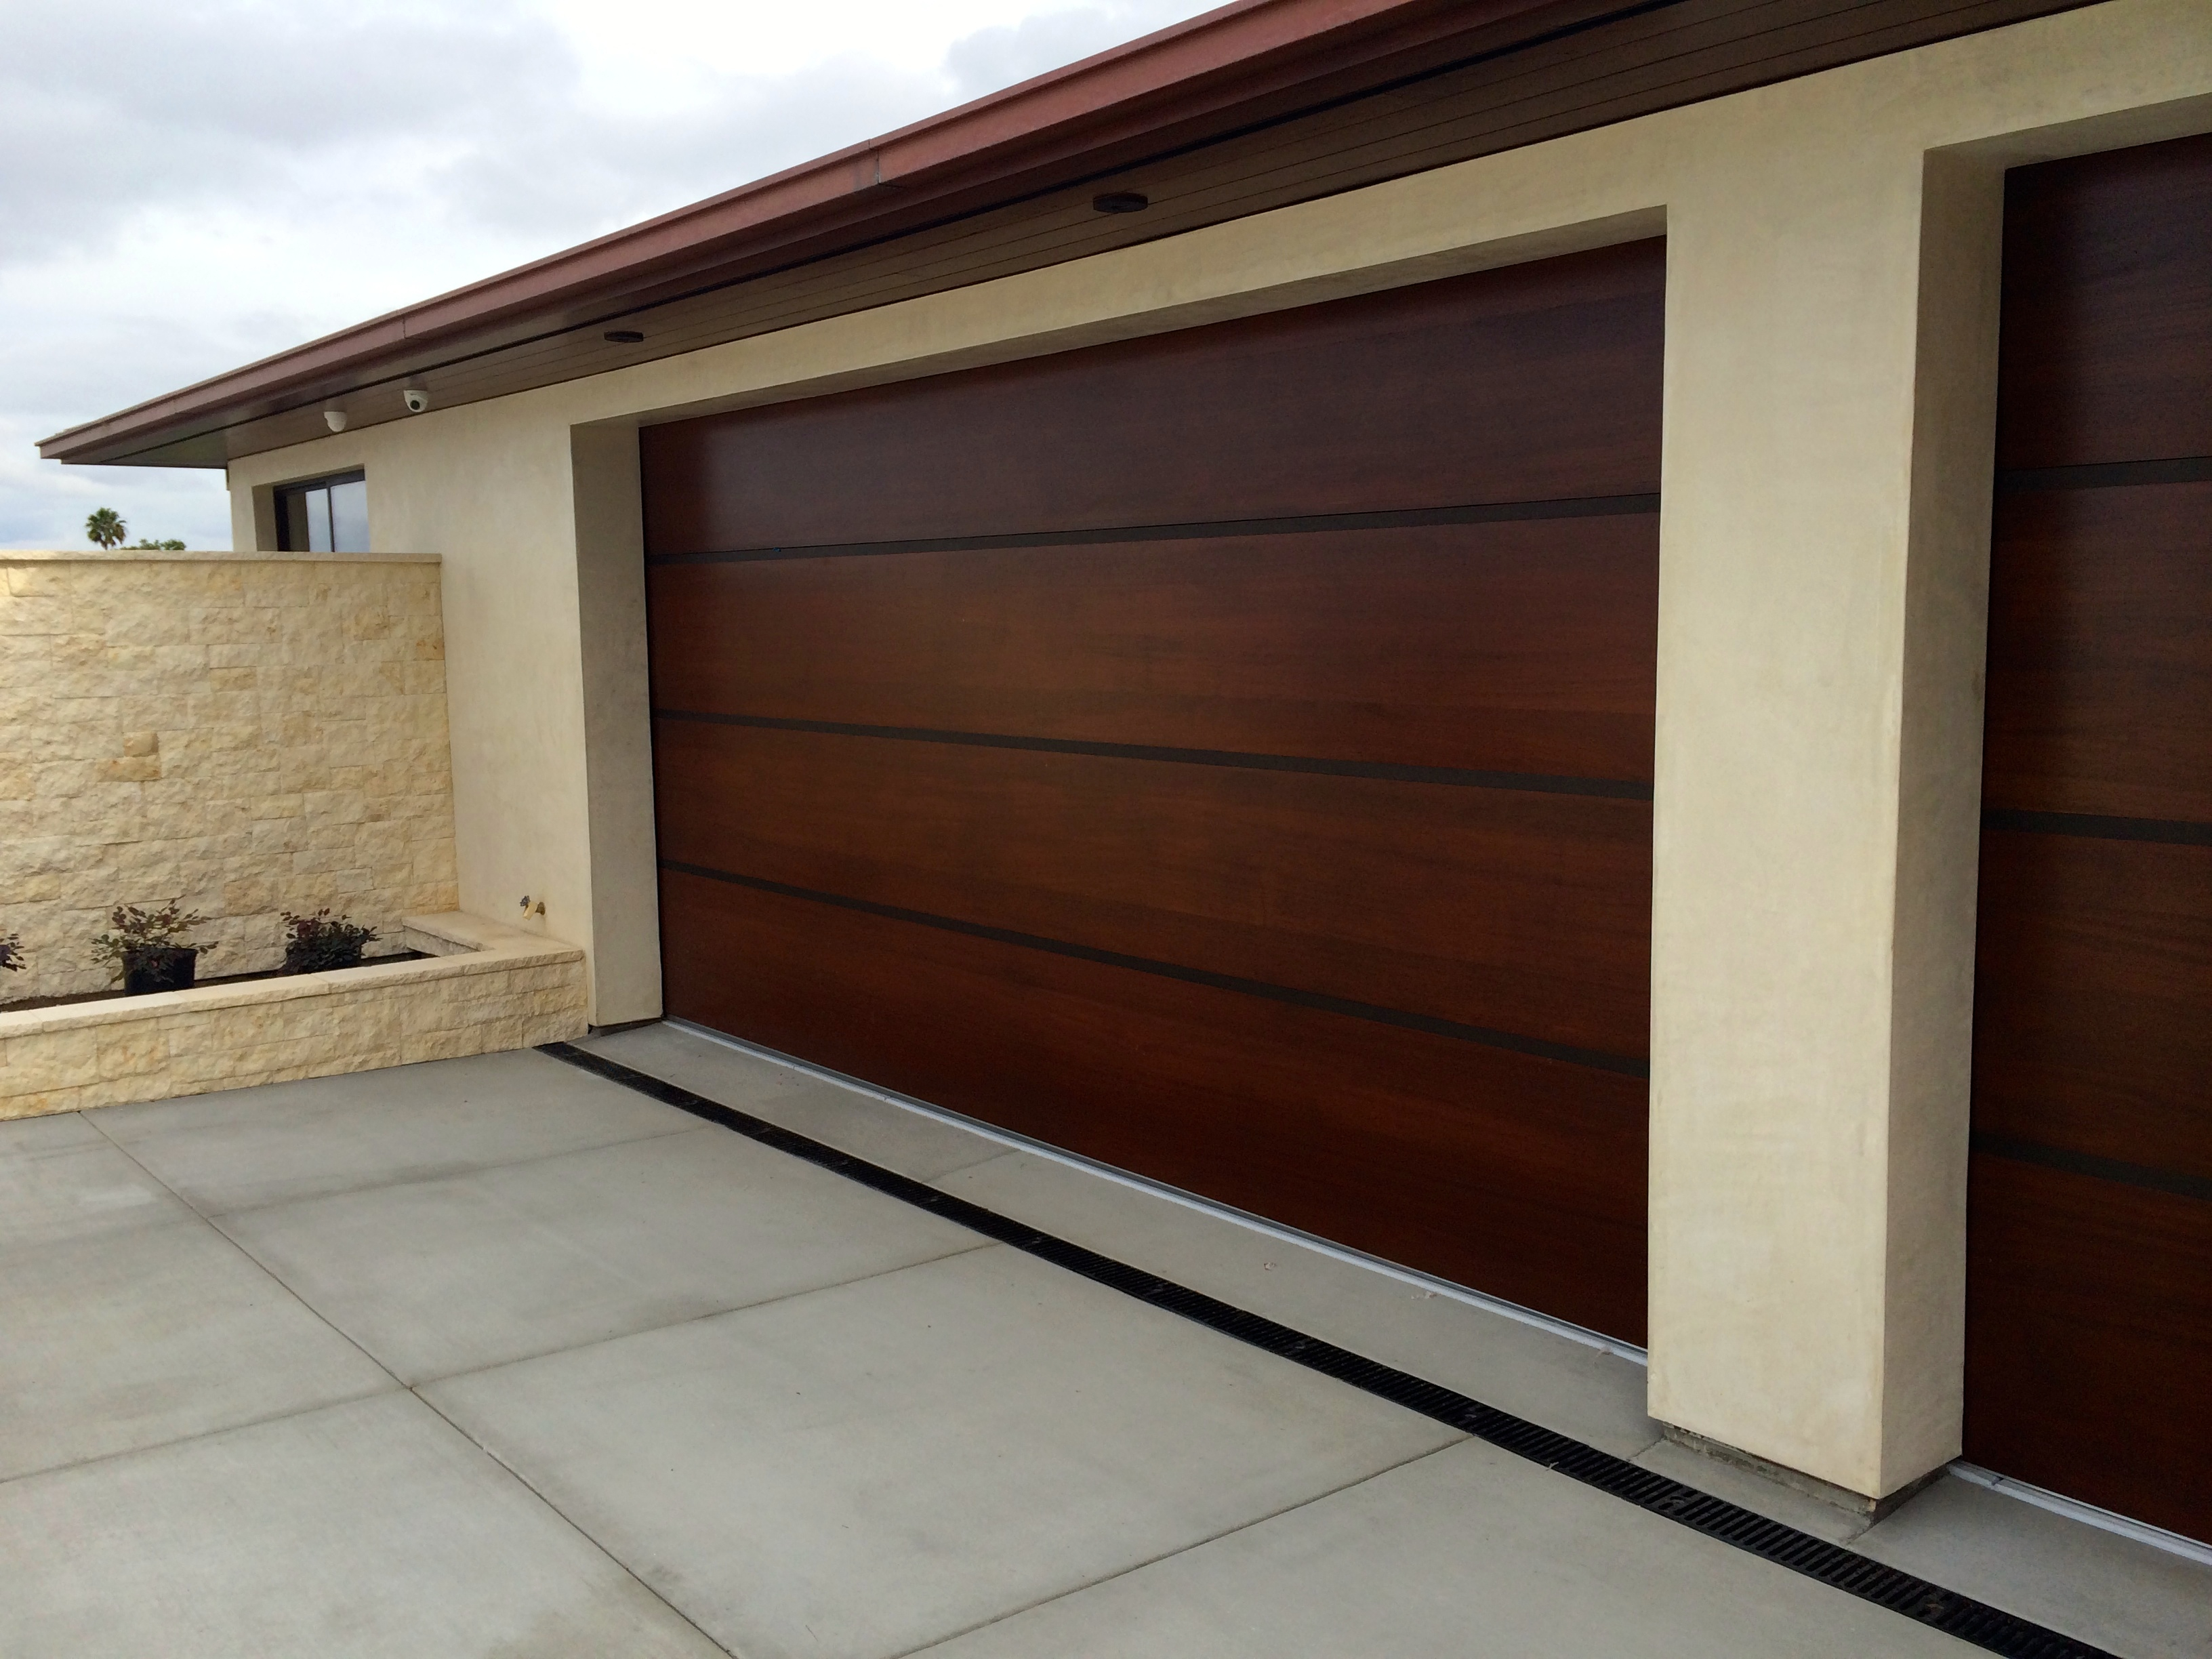 Garage Incredible Wood Garage Doors Design Wood Garage Door Prices within size 3264 X 2448